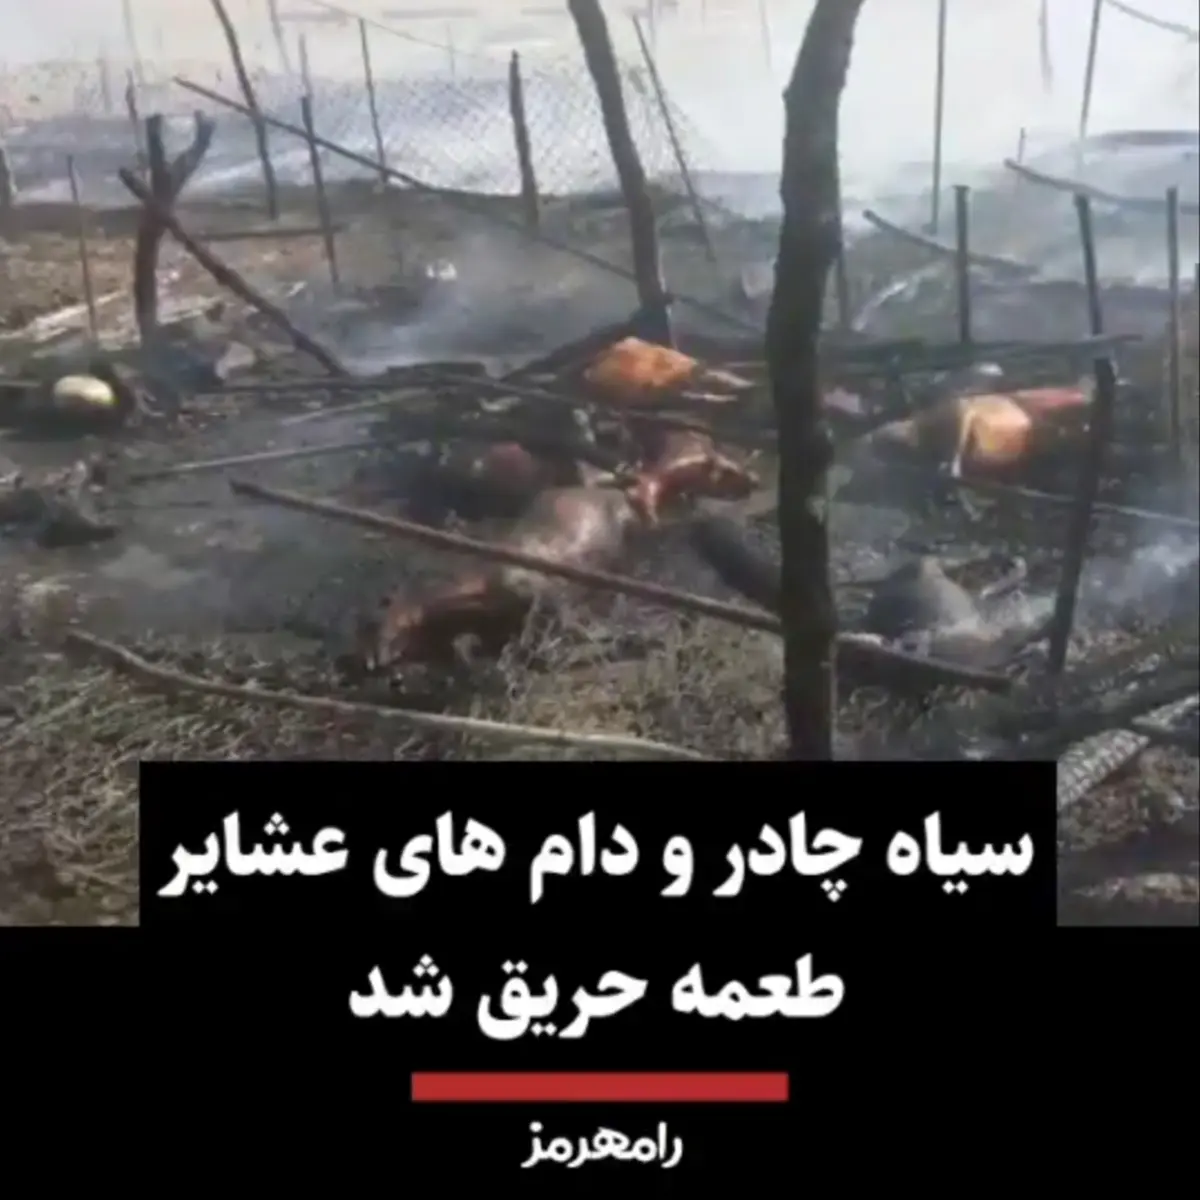 سیاه چادر و دام های عشایر طعمه حریق شد + ویدئو